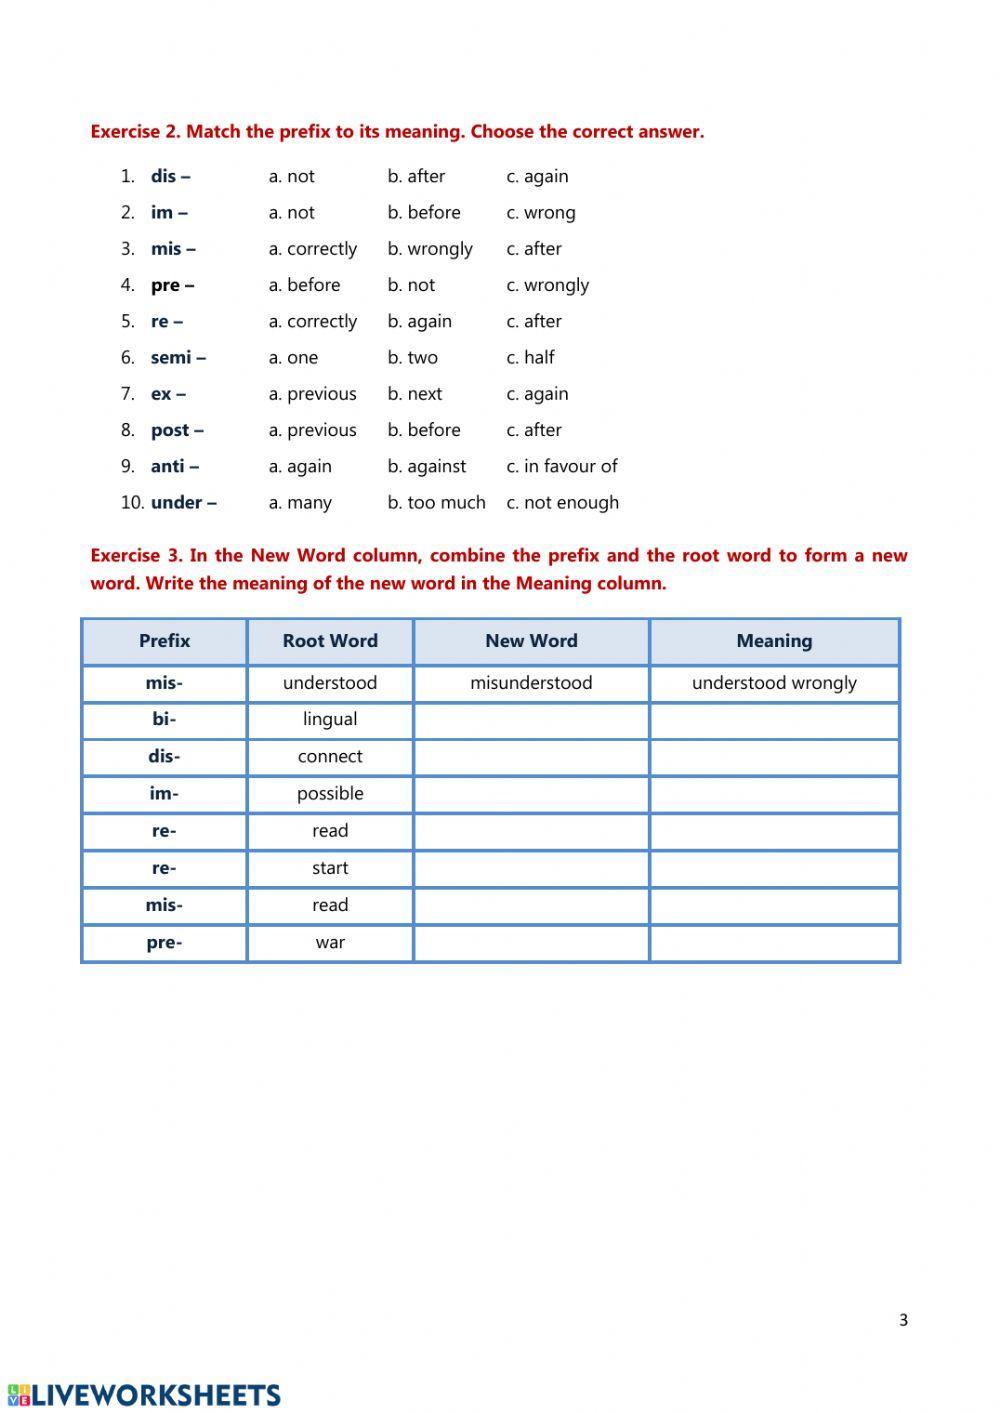 Word formation - prefixes 1